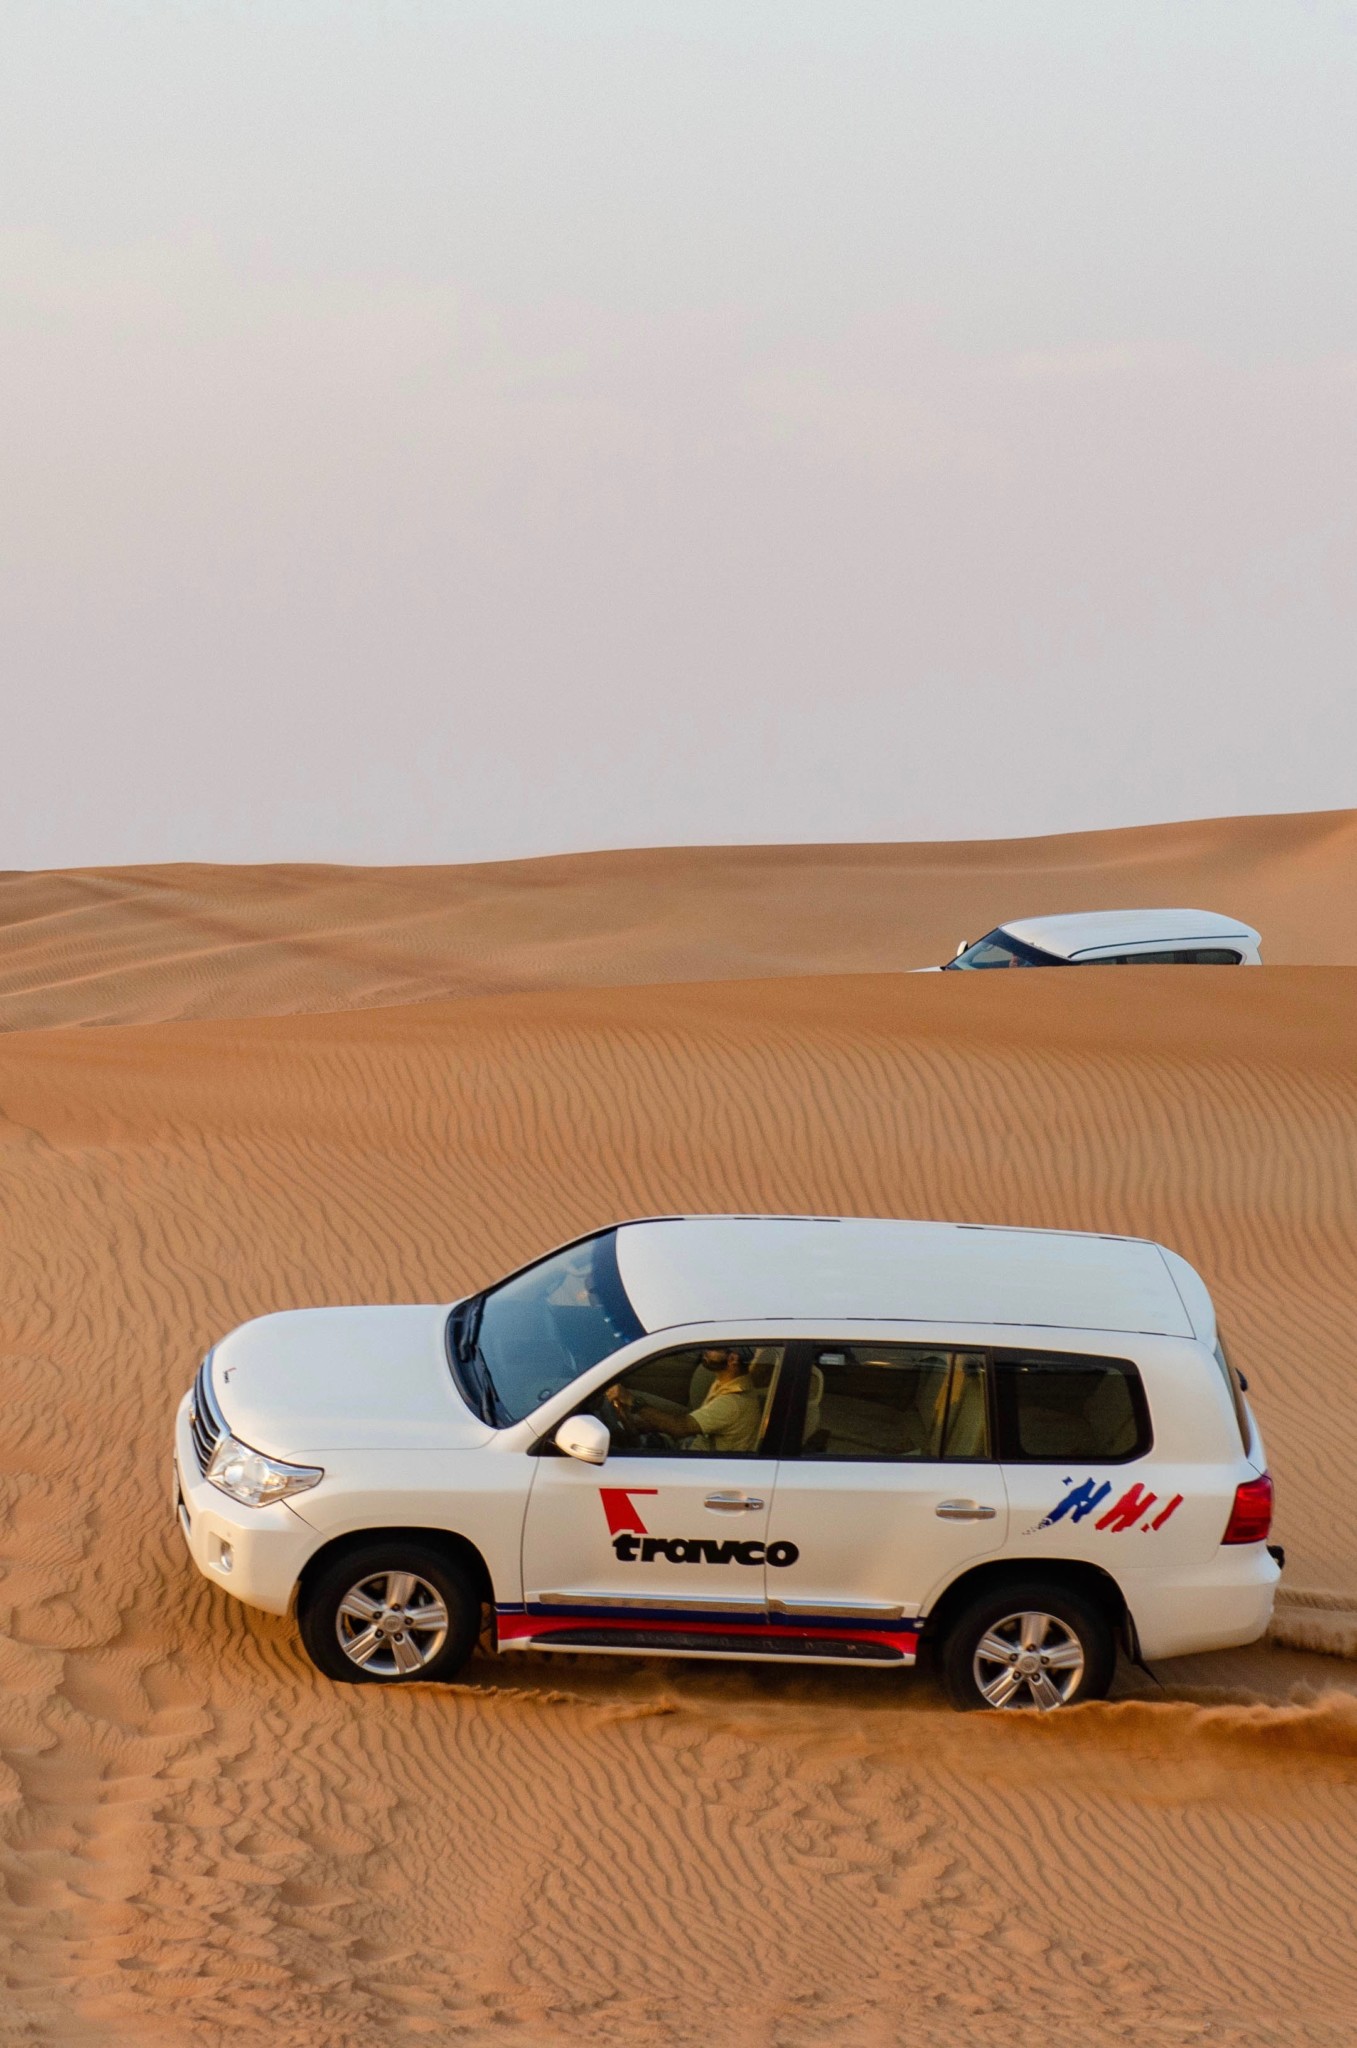 Eine Wüstentour in Dubai mit dem Jeep ist ein echtes Highlight